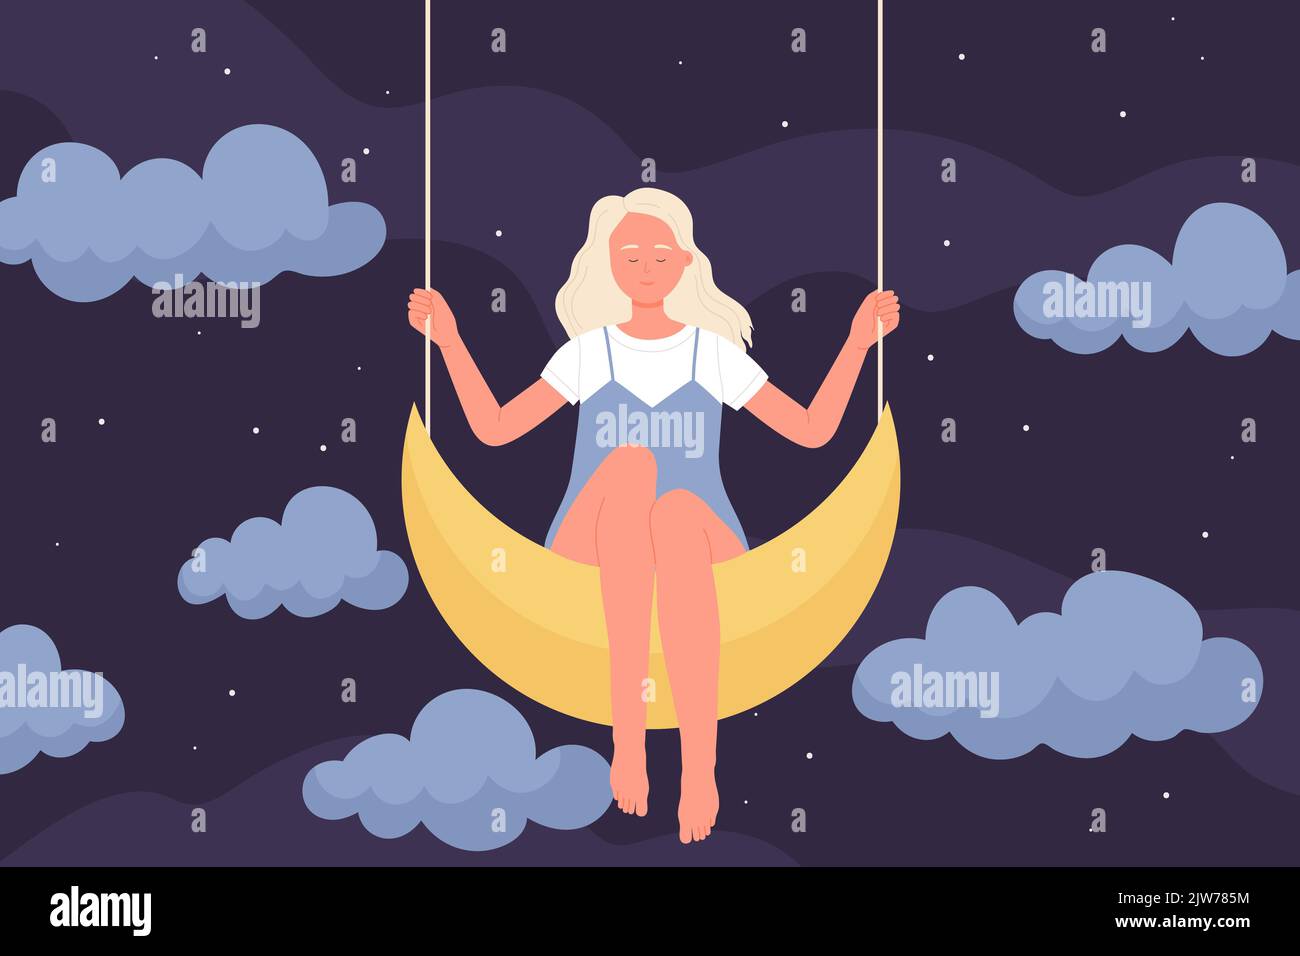 Fille assise sur la lune dans le sommeil à la nuit illustration de vecteur. Caricature jeune femme mignonne avec de longs cheveux de l'équitation croissant balançoire parmi silhouettes de nuages, fantaisie et rêves romantiques de caractère féminin Illustration de Vecteur